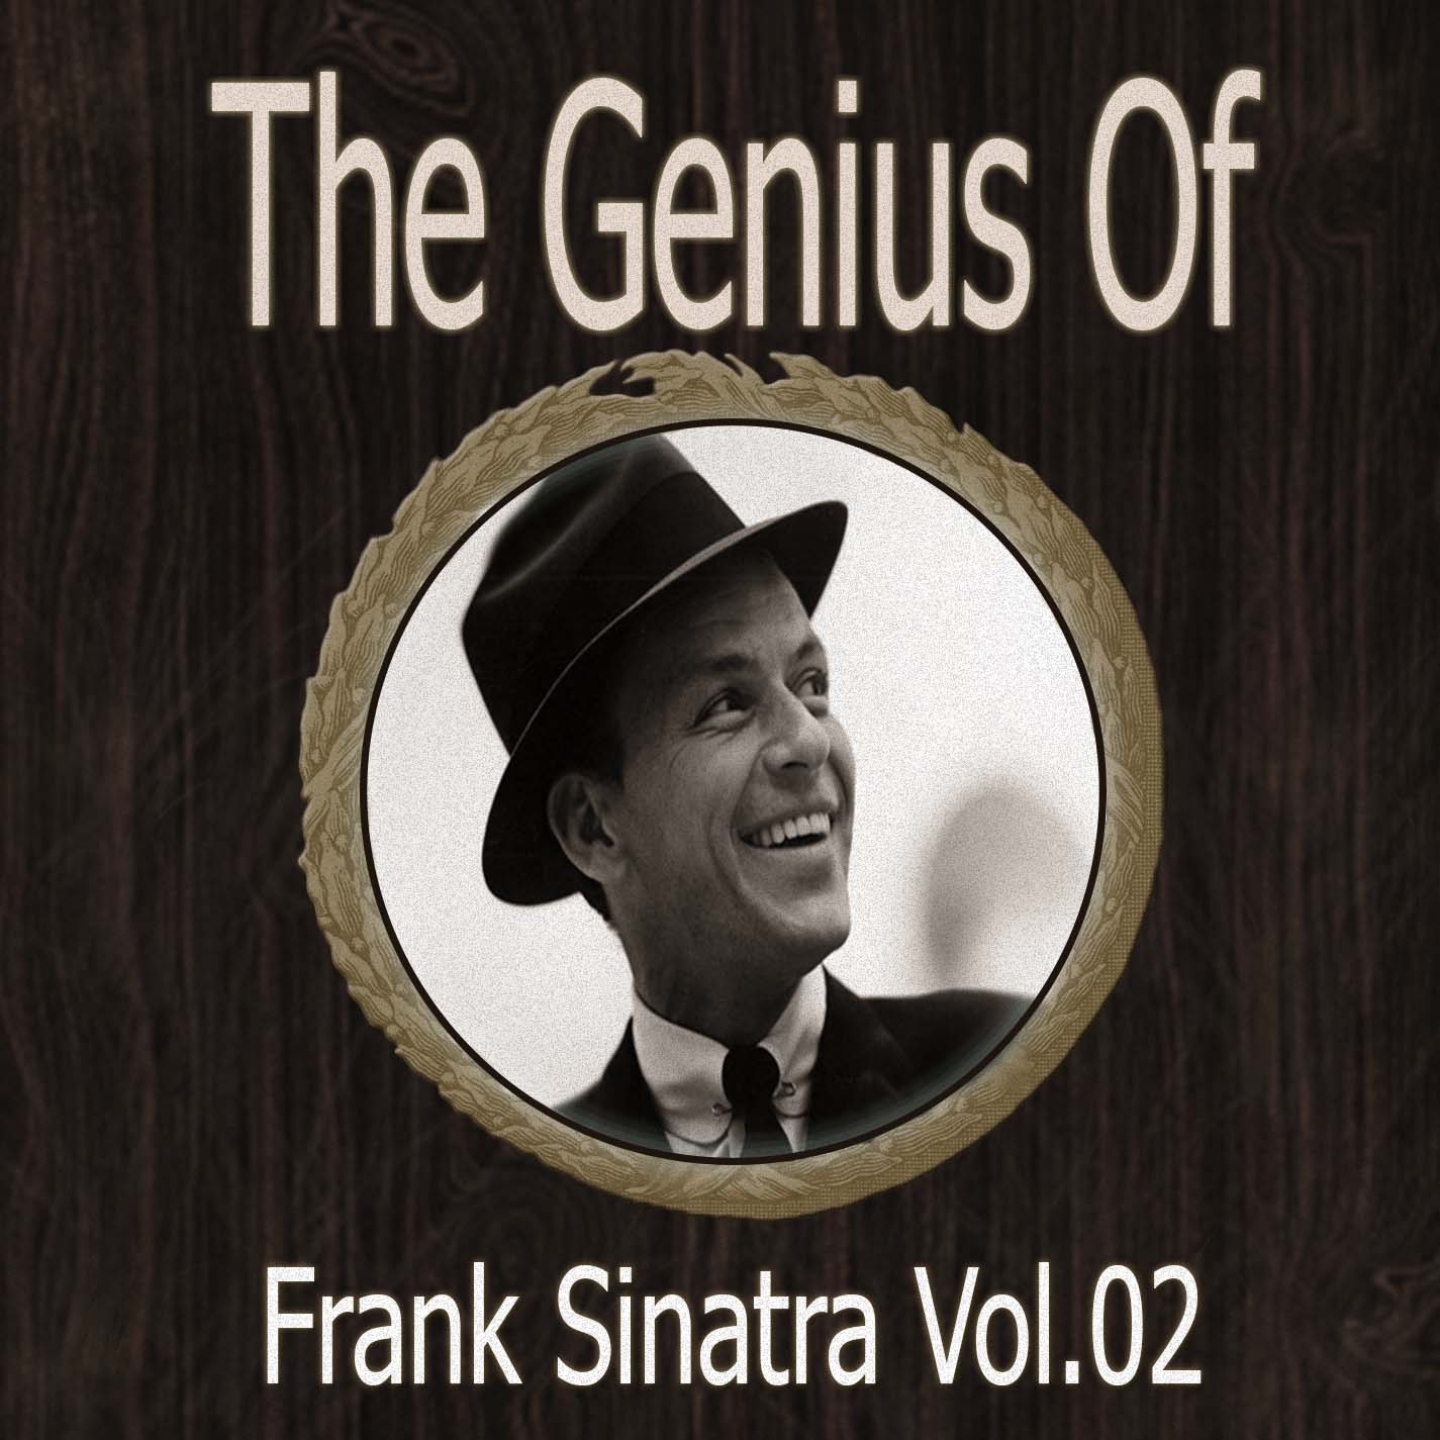 The Genius of Frank Sinatra Vol 02